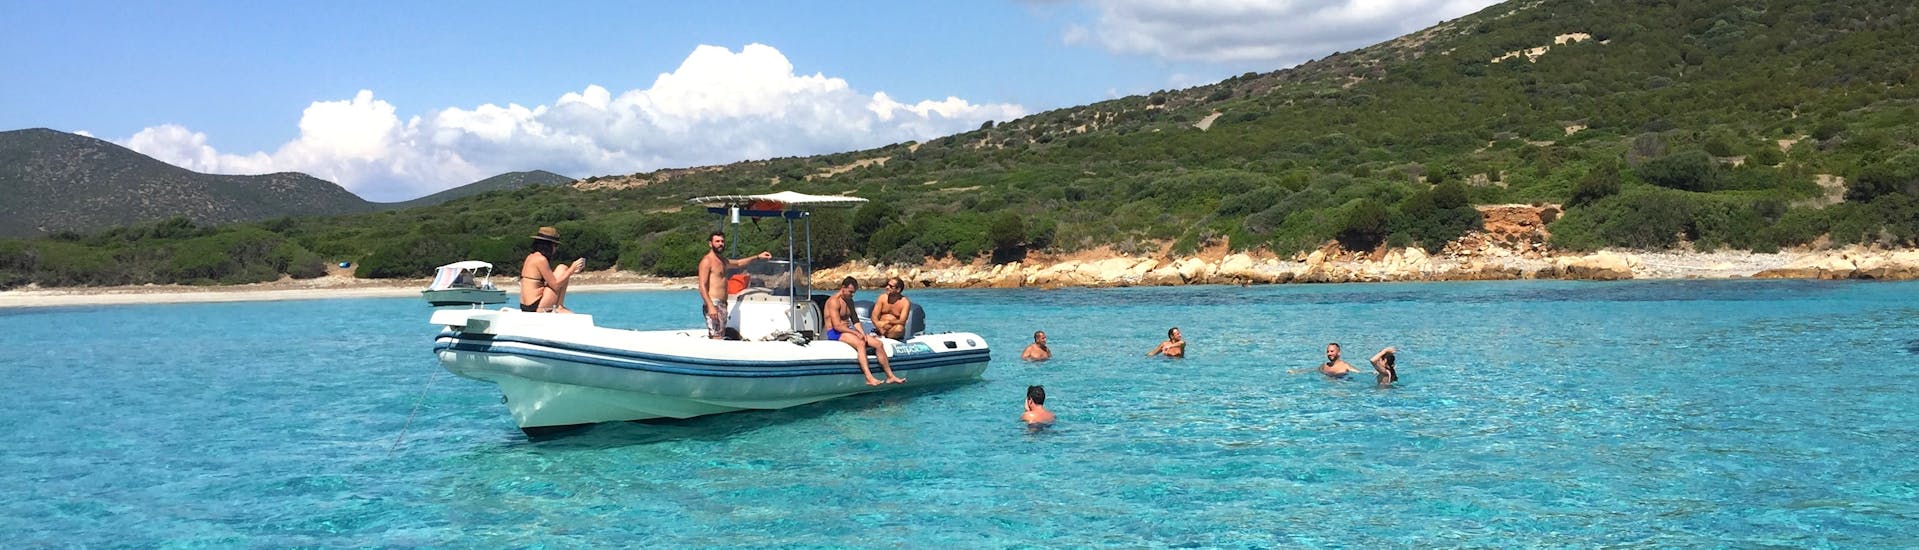 Teilnehmer schwimmen in einer klaren Bucht um das Boot während der Privaten RIB-Bootstour von Cagliari zum Strand von Mari Pintau mit Schnorcheln.